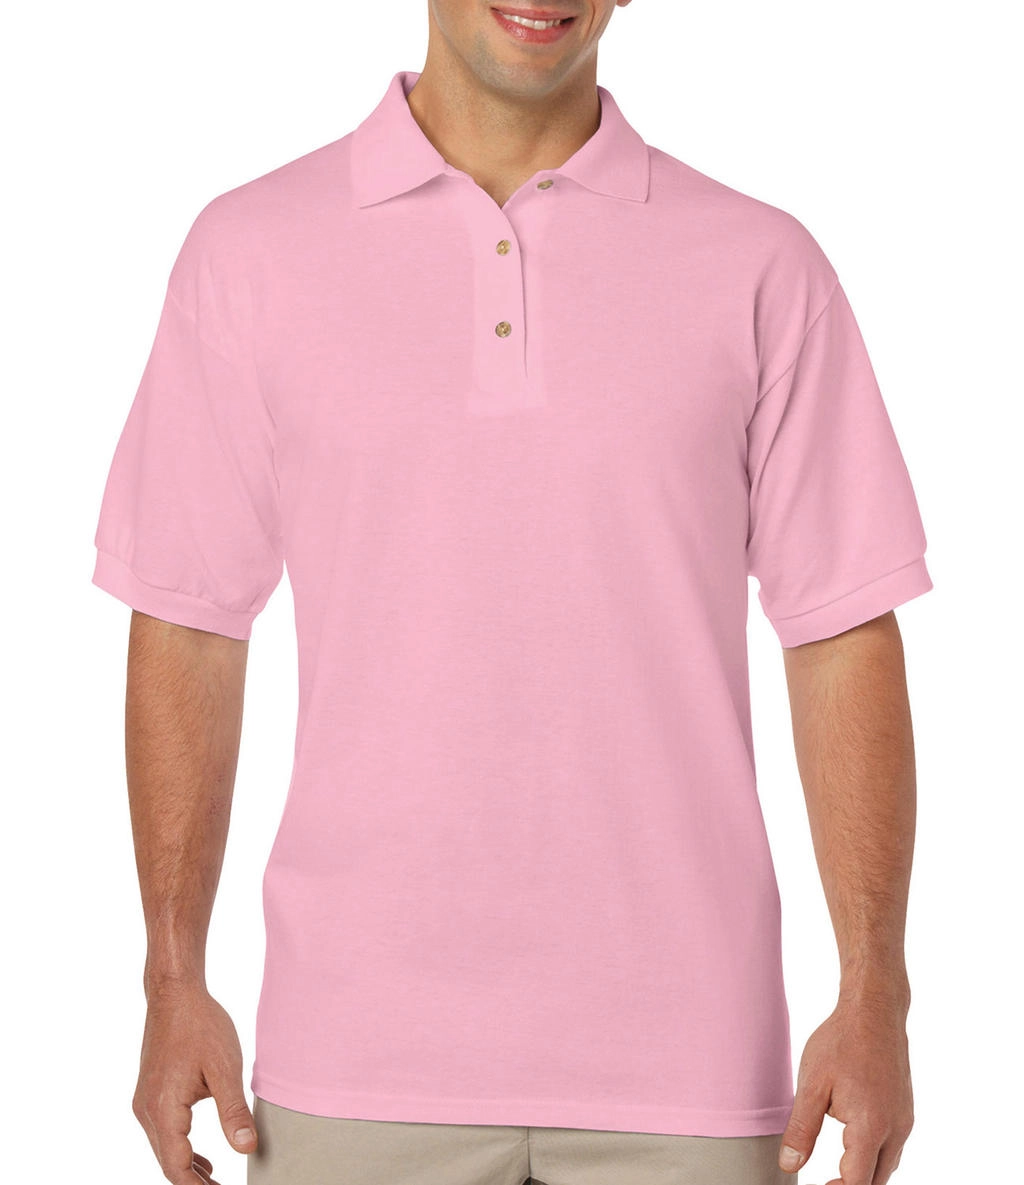 DryBlend Adult Jersey Polo zum Besticken und Bedrucken in der Farbe Light Pink mit Ihren Logo, Schriftzug oder Motiv.